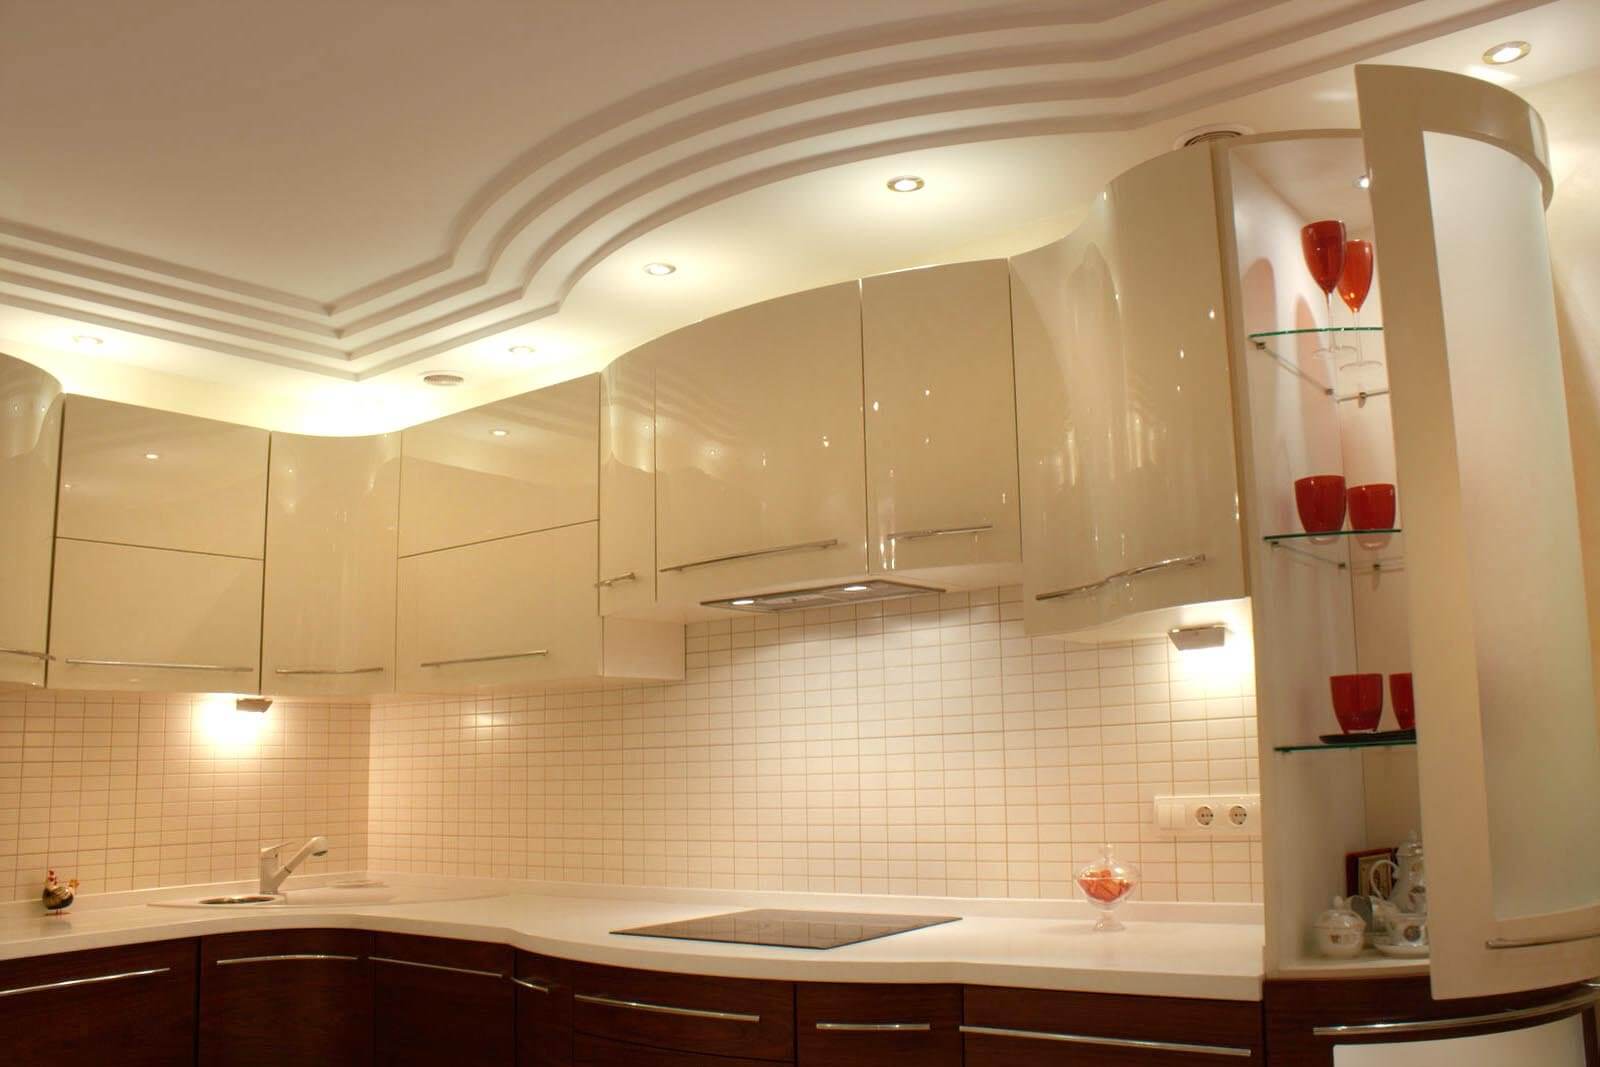 Подвесной потолок на кухне из гипсокартона своими руками - фото и нюансы монтажа